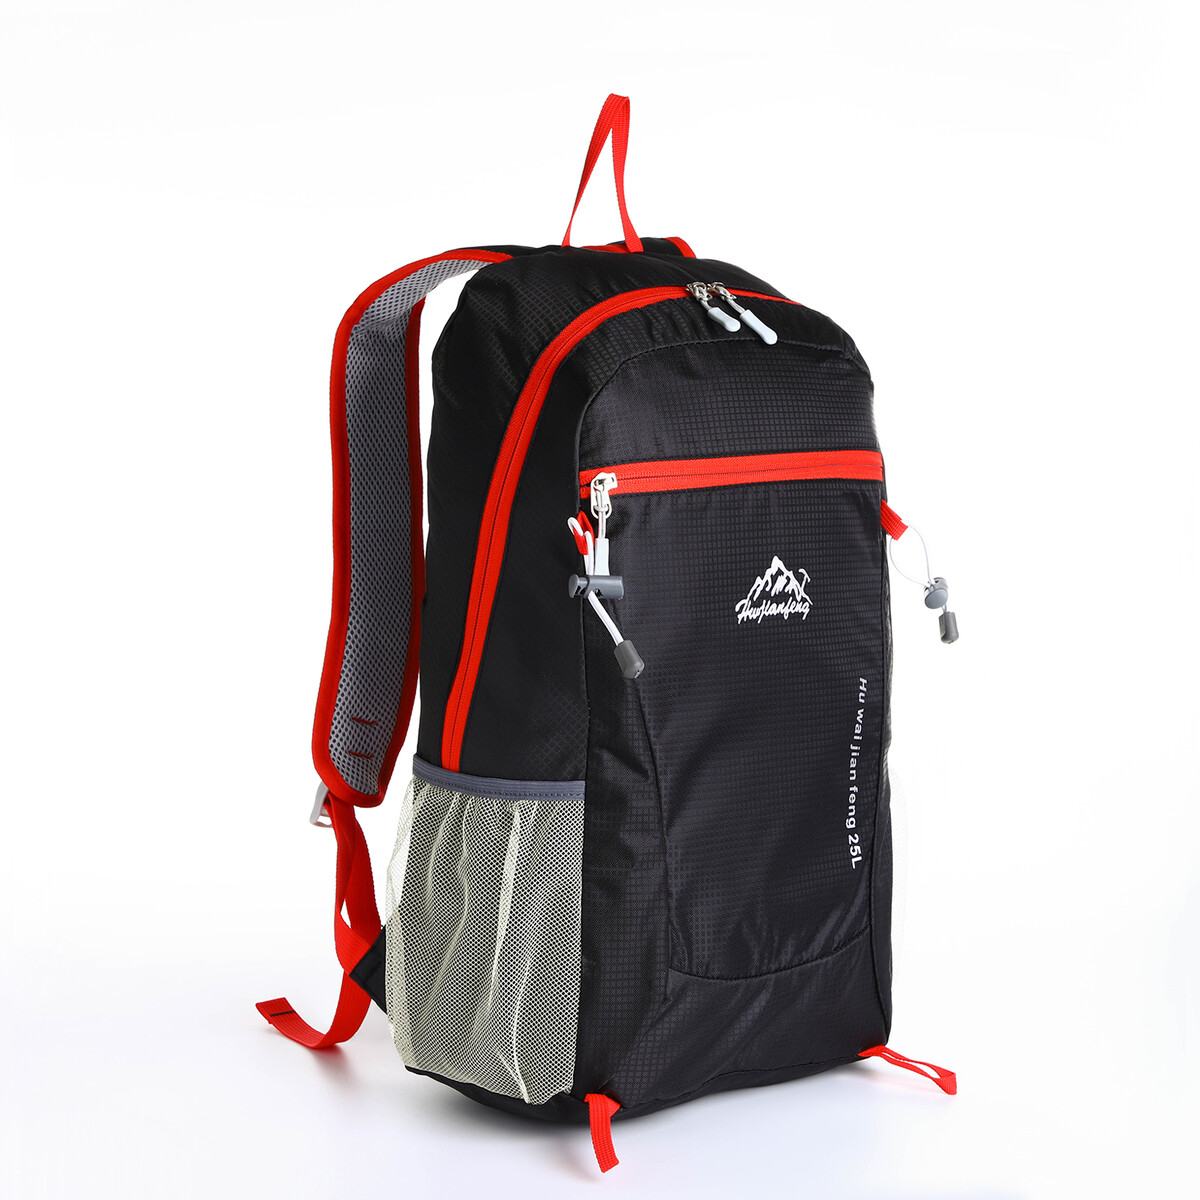 Рюкзак туристический 25л, складной, водонепроницаемый, на молнии, 4 кармана, цвет черный